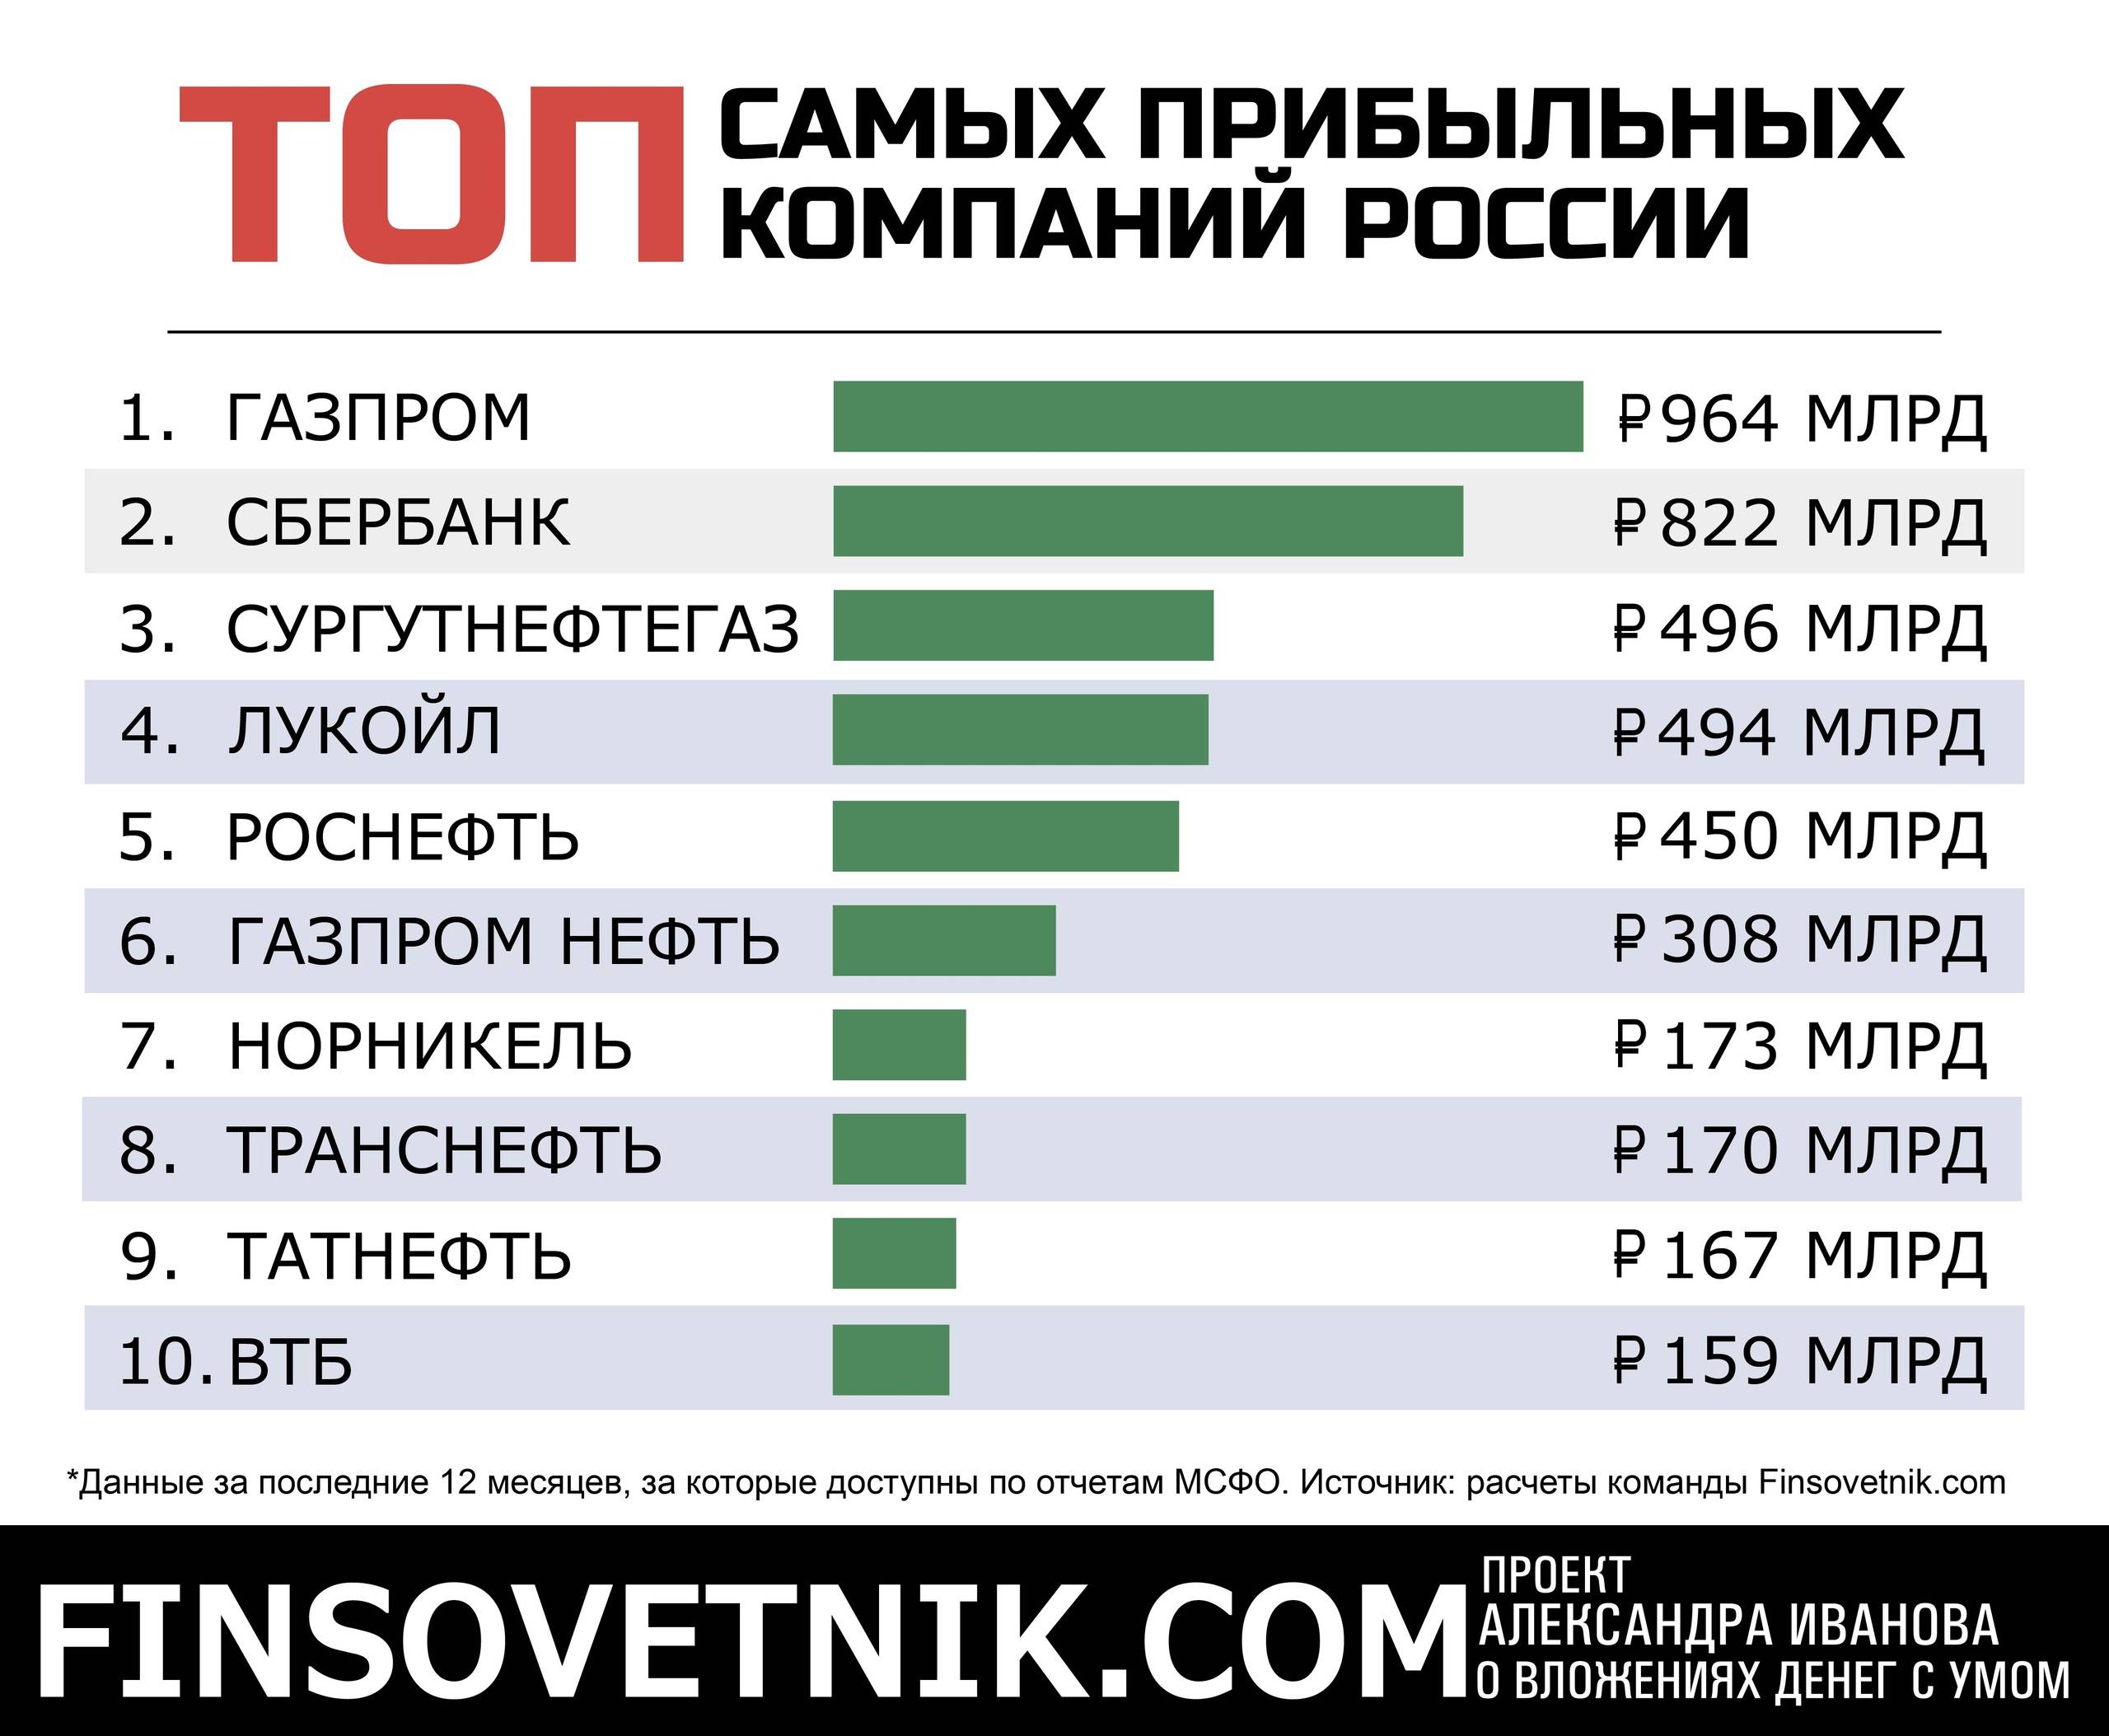 Насколько прибыльно. Самые прибыльные компании. Самый прибыльный бизнес в России. Какой бизнес самый прибыльный. Самые прибыльные предприятия.